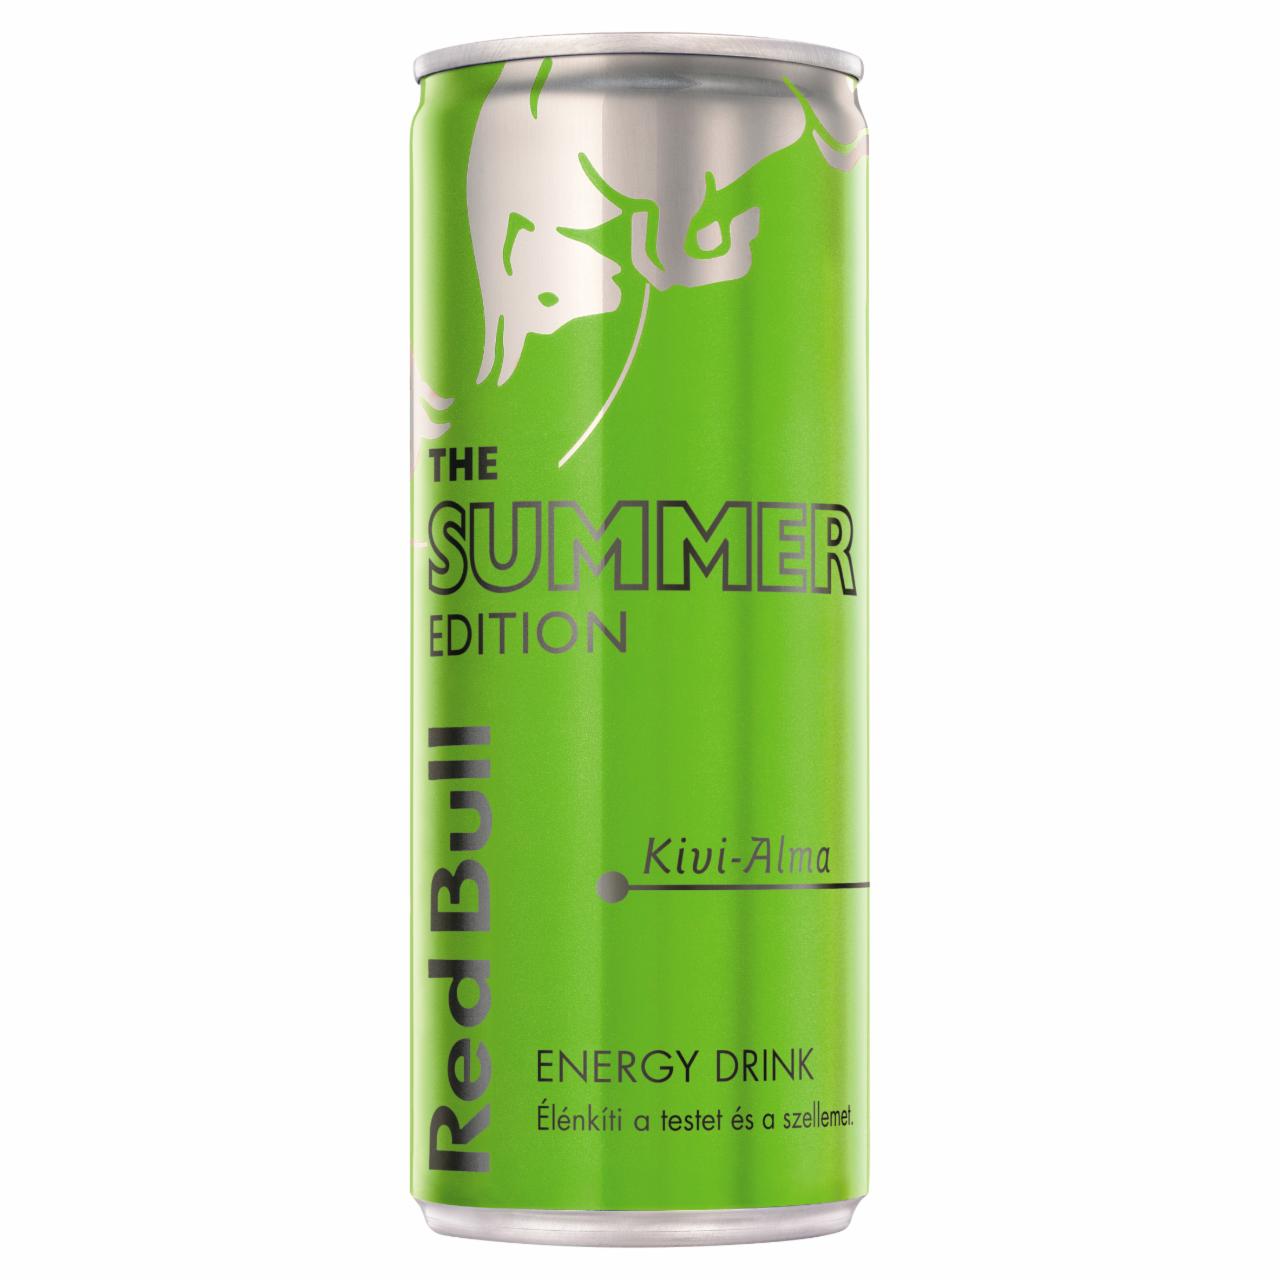 Képek - Red Bull The Summer Edition koffein és arginin tartalmú ital kivi-alma ízesítéssel 250 ml